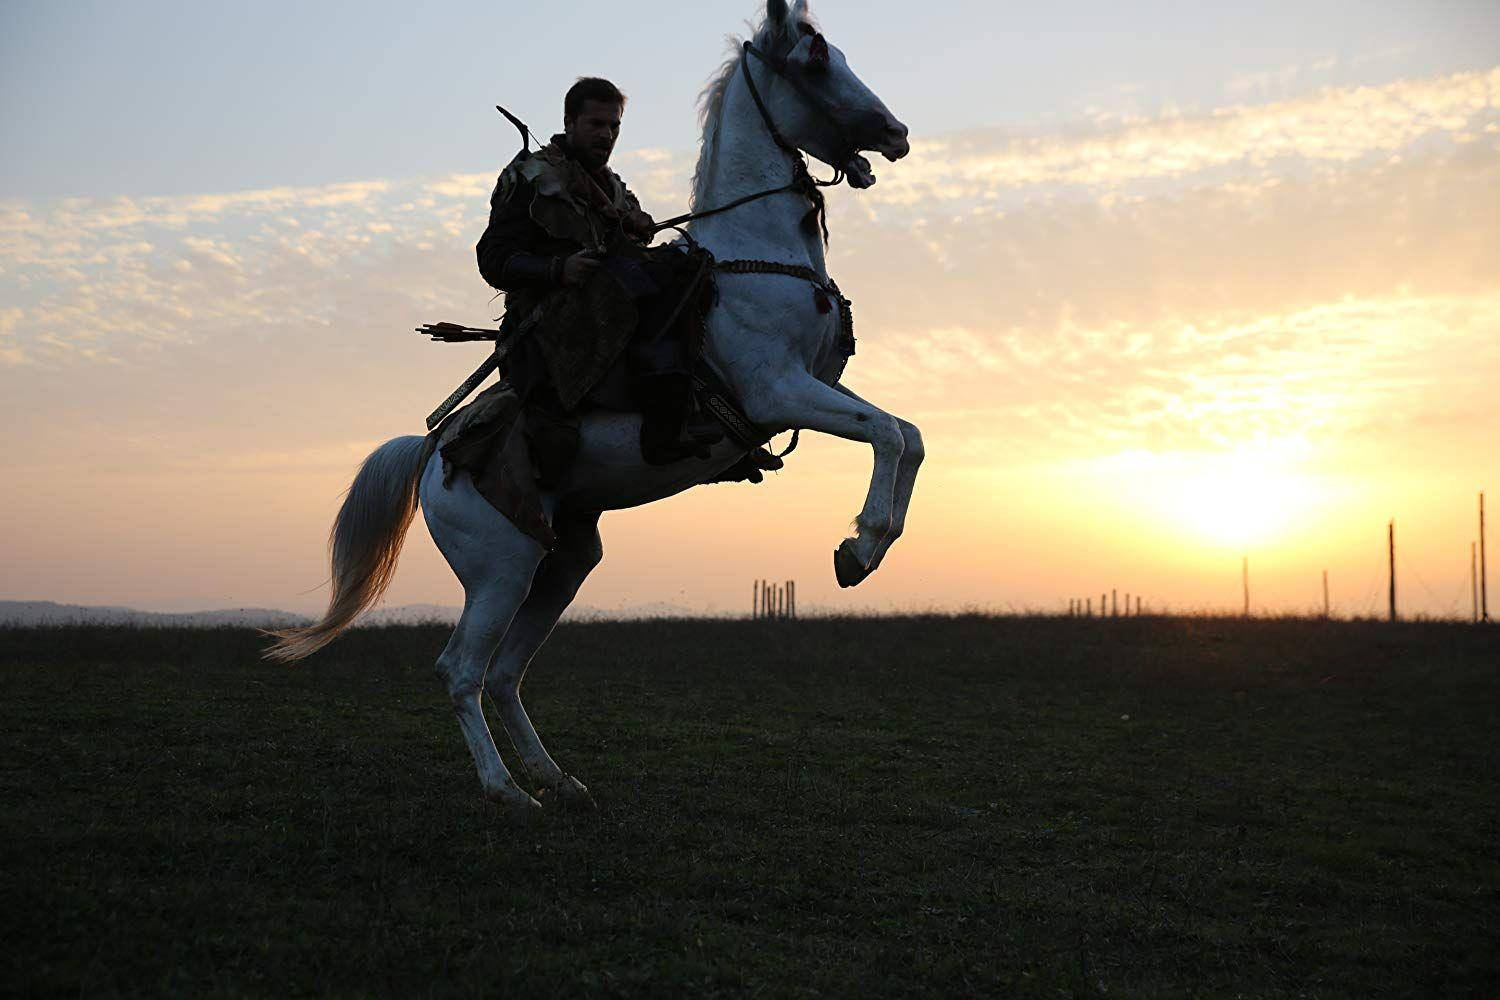 Ertugrul Gazi Riding His White Horse Background